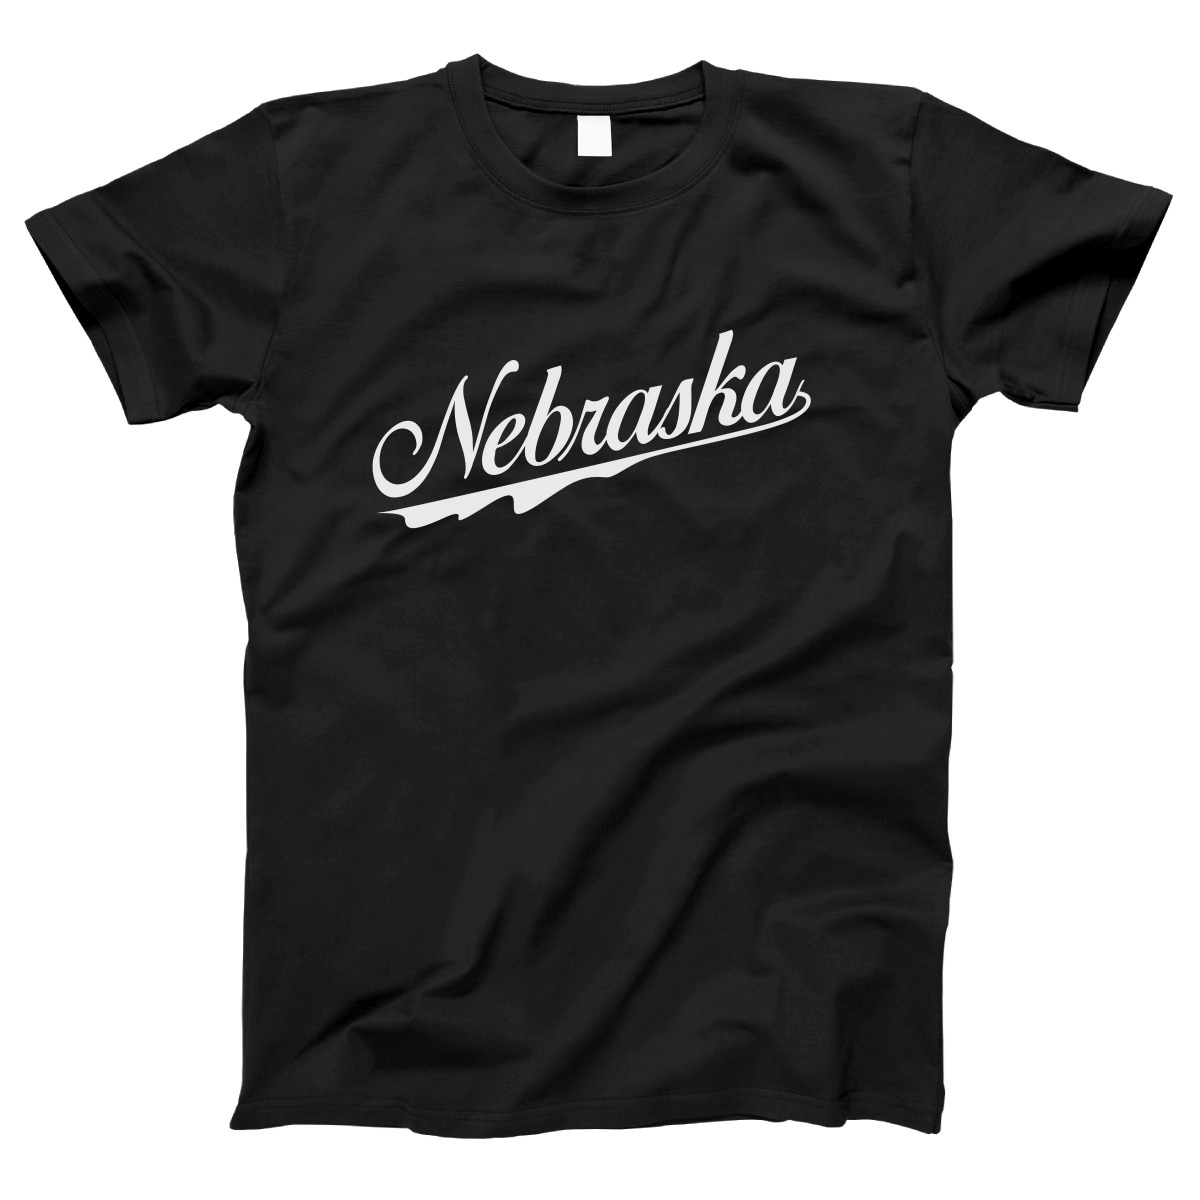 Nebraska Women's T-shirt | Black